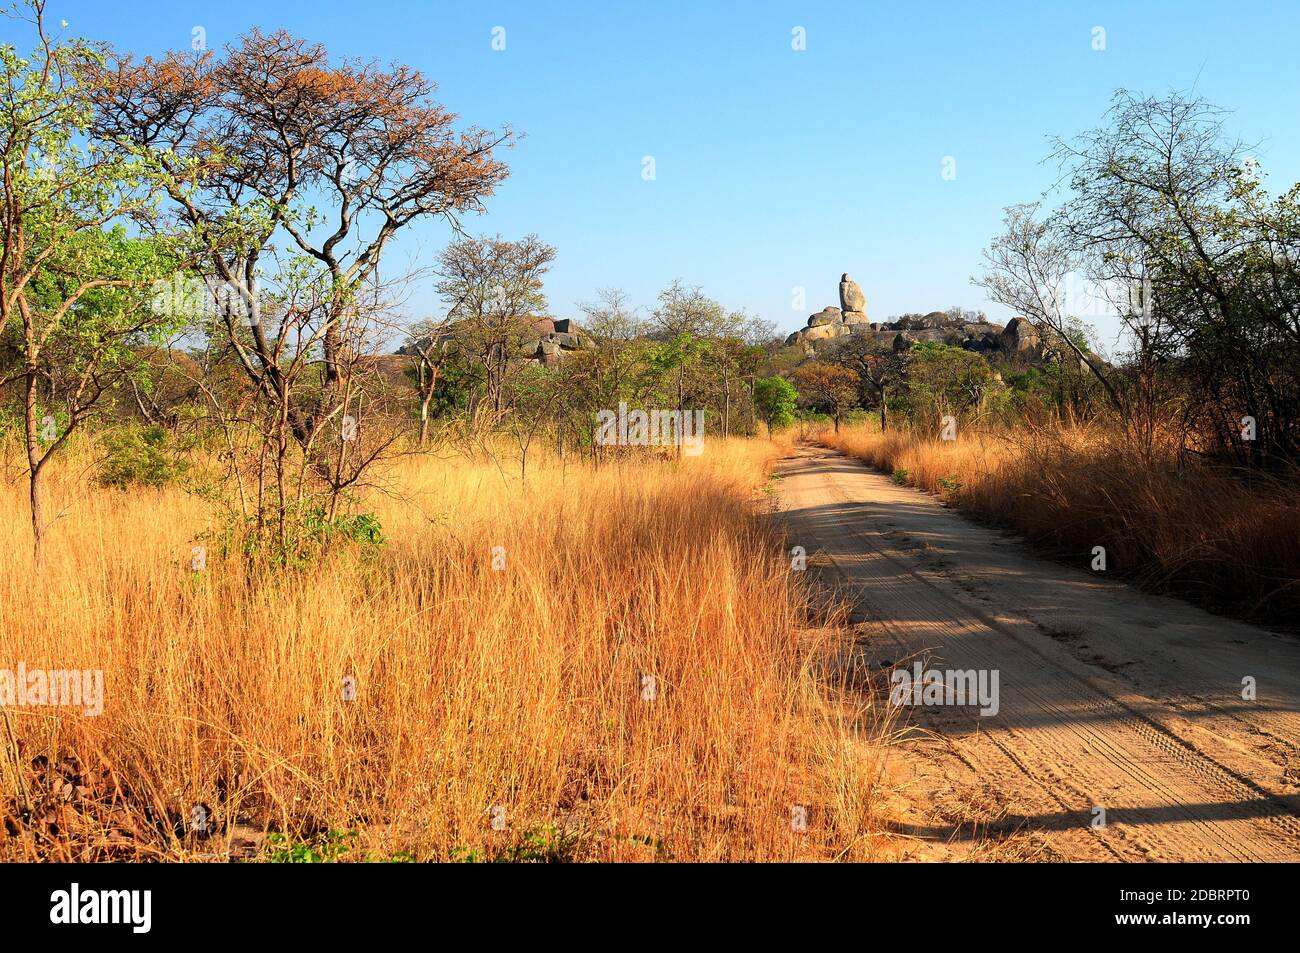 Matobo National Park, Zimbabwe Stock Photo